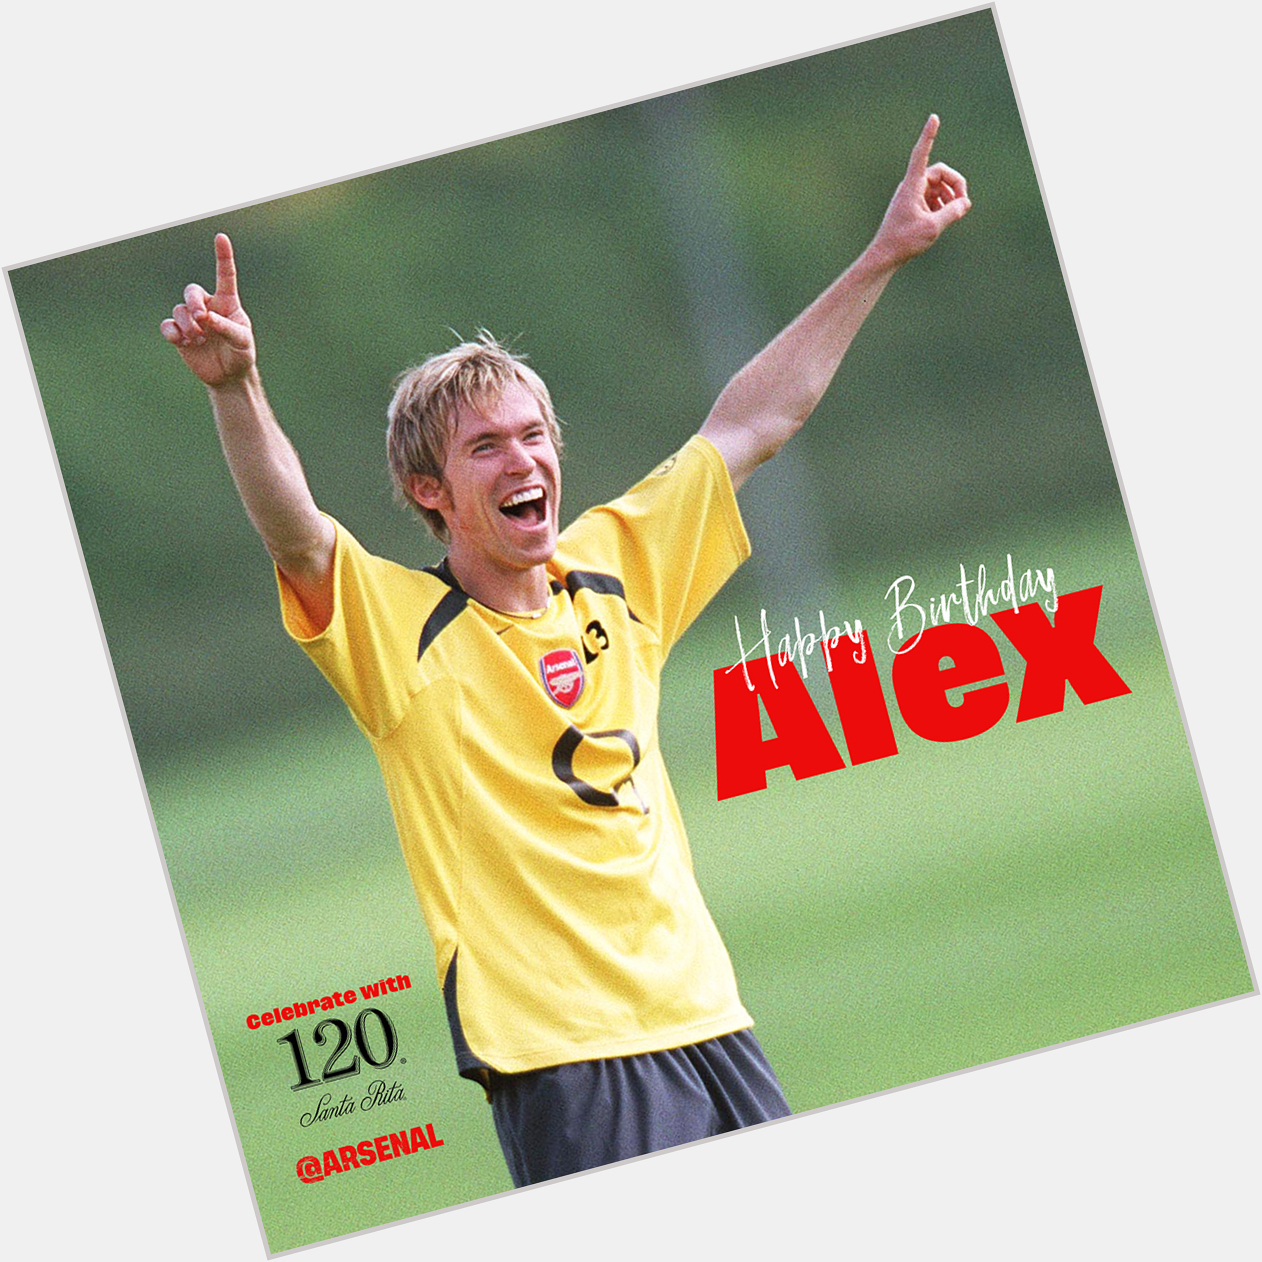 Happy birthday, Alexander Hleb! 